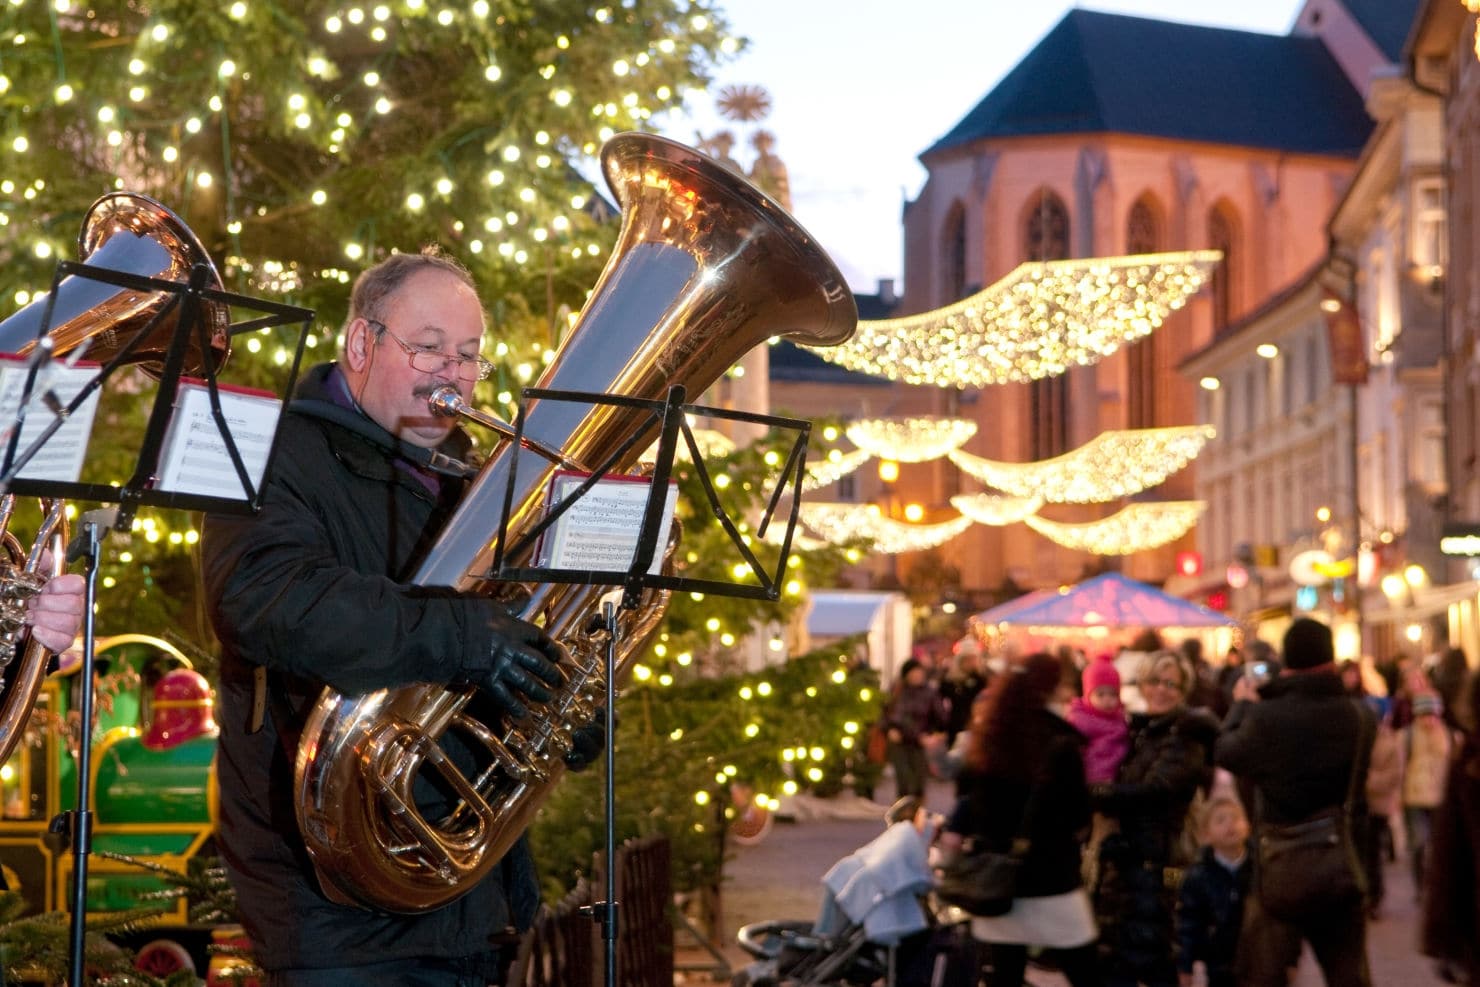 Ein besonderes Advent Highlight: Das Alpen Adria-Singen am 8. Dezember bei der Laternenbühne auf dem Villacher Hauptplatz.